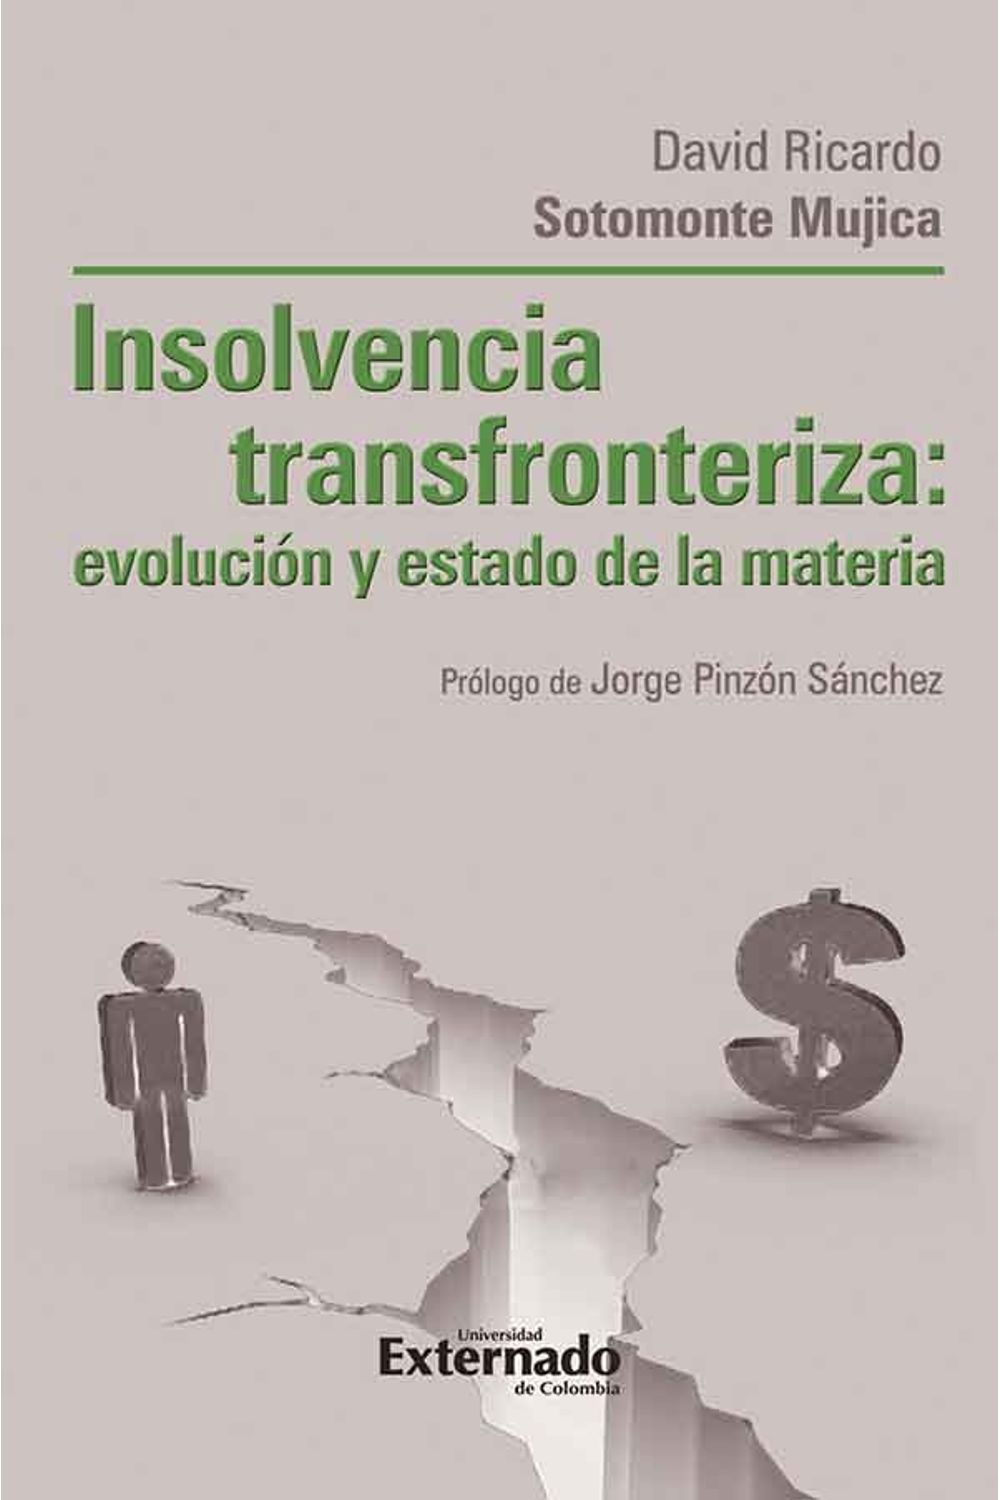 bw-insolvencia-transfronteriza-u-externado-de-colombia-9789587105476